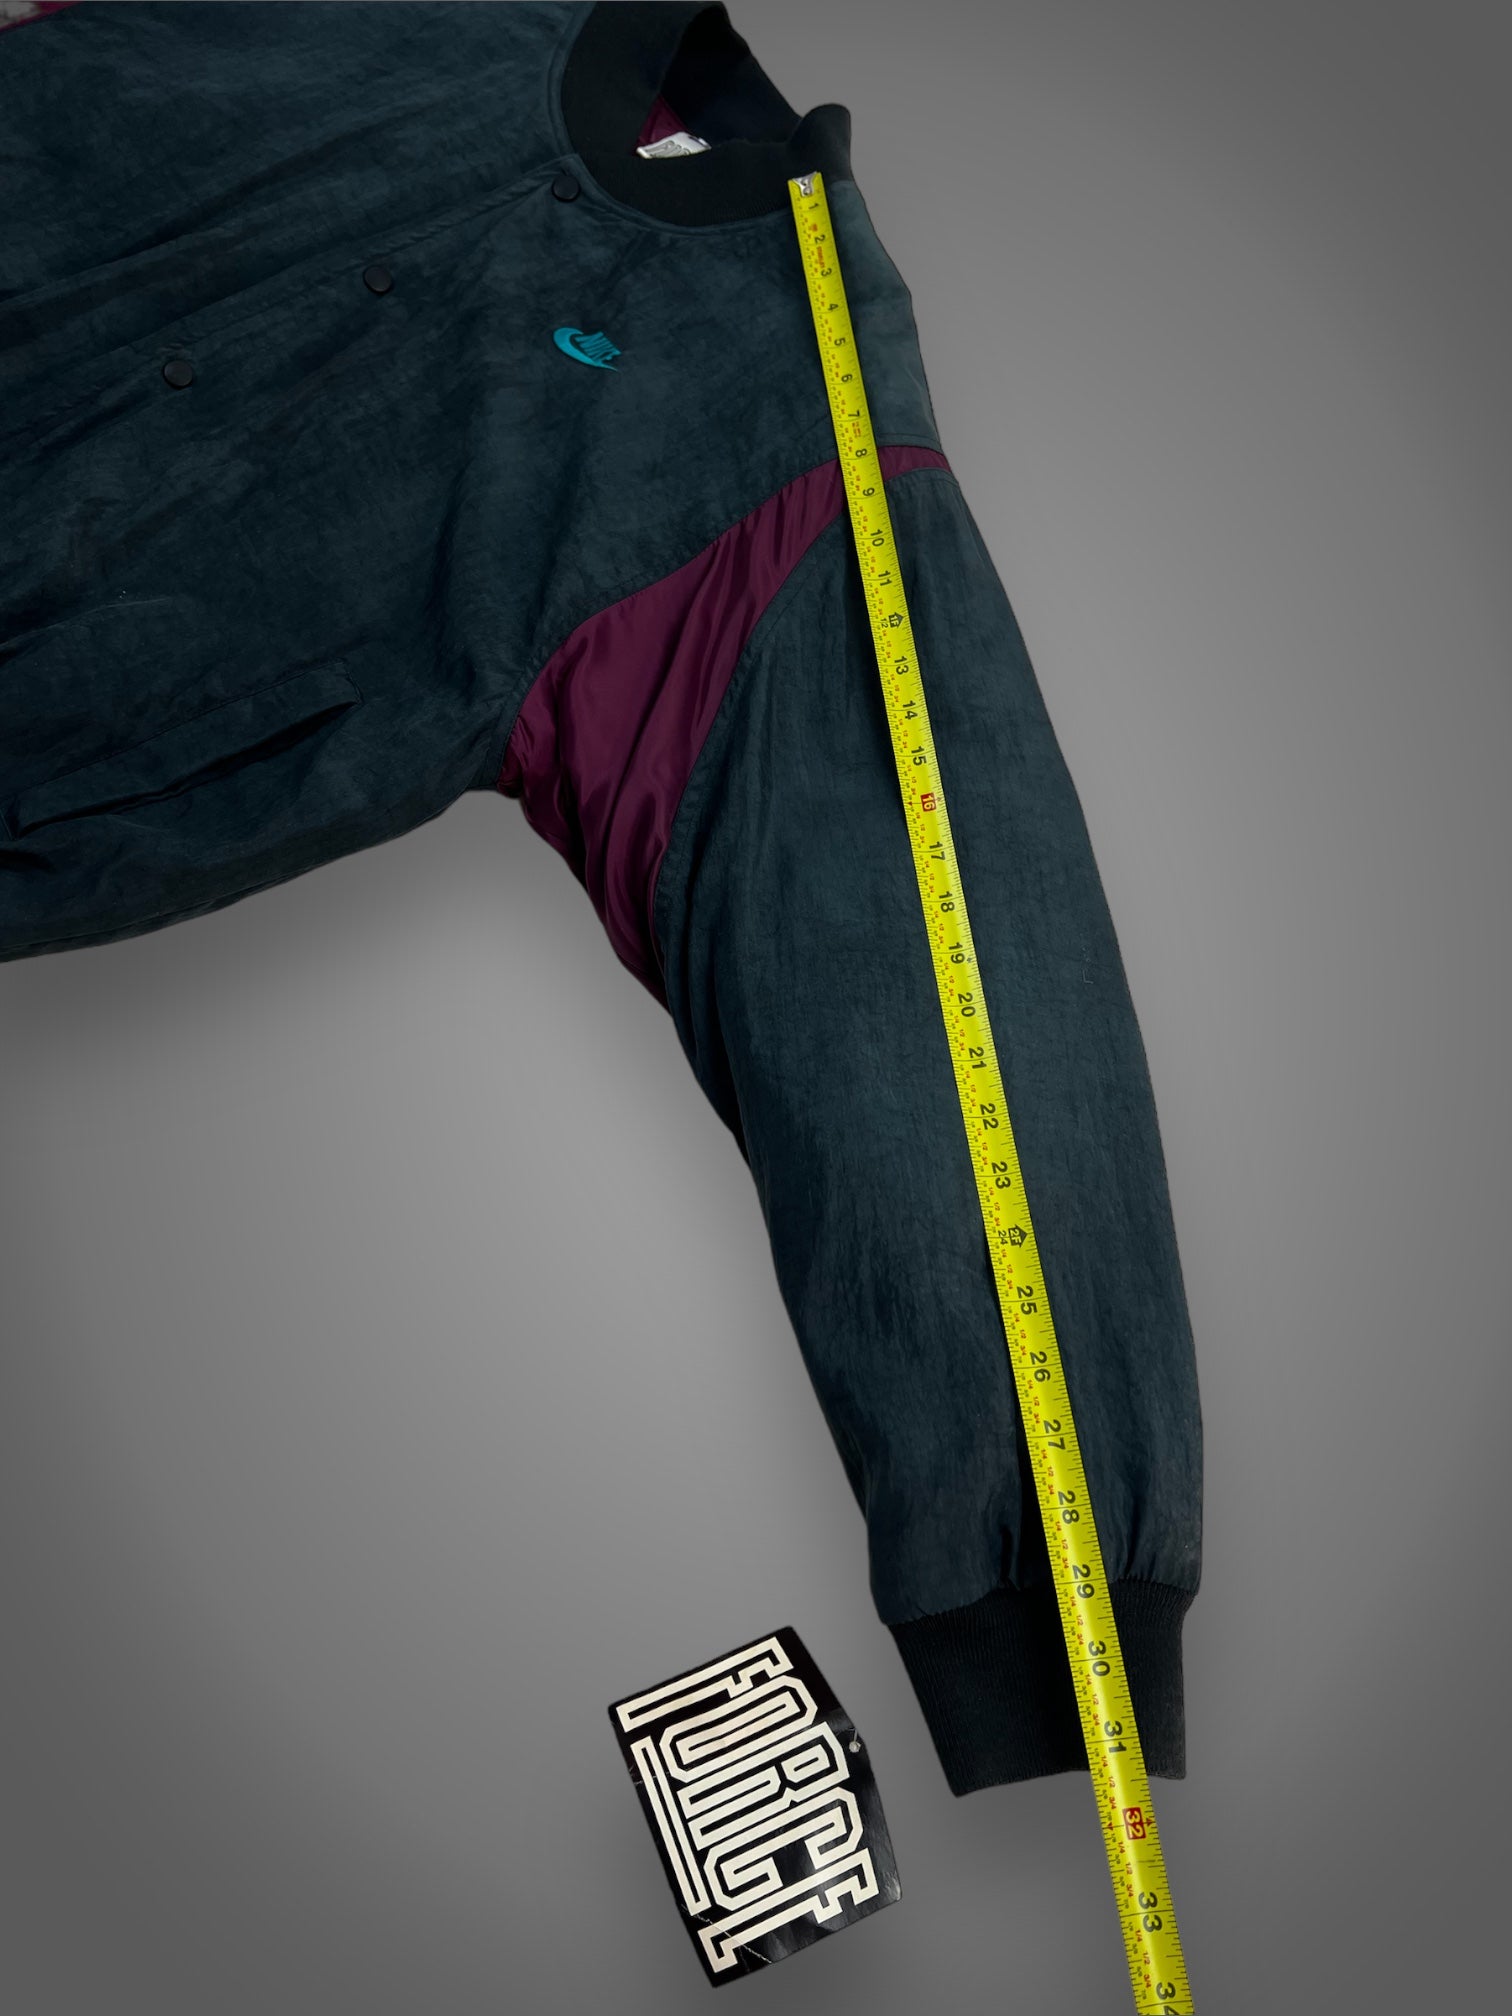 90s deadstock Nike Force jacket fits L/XL